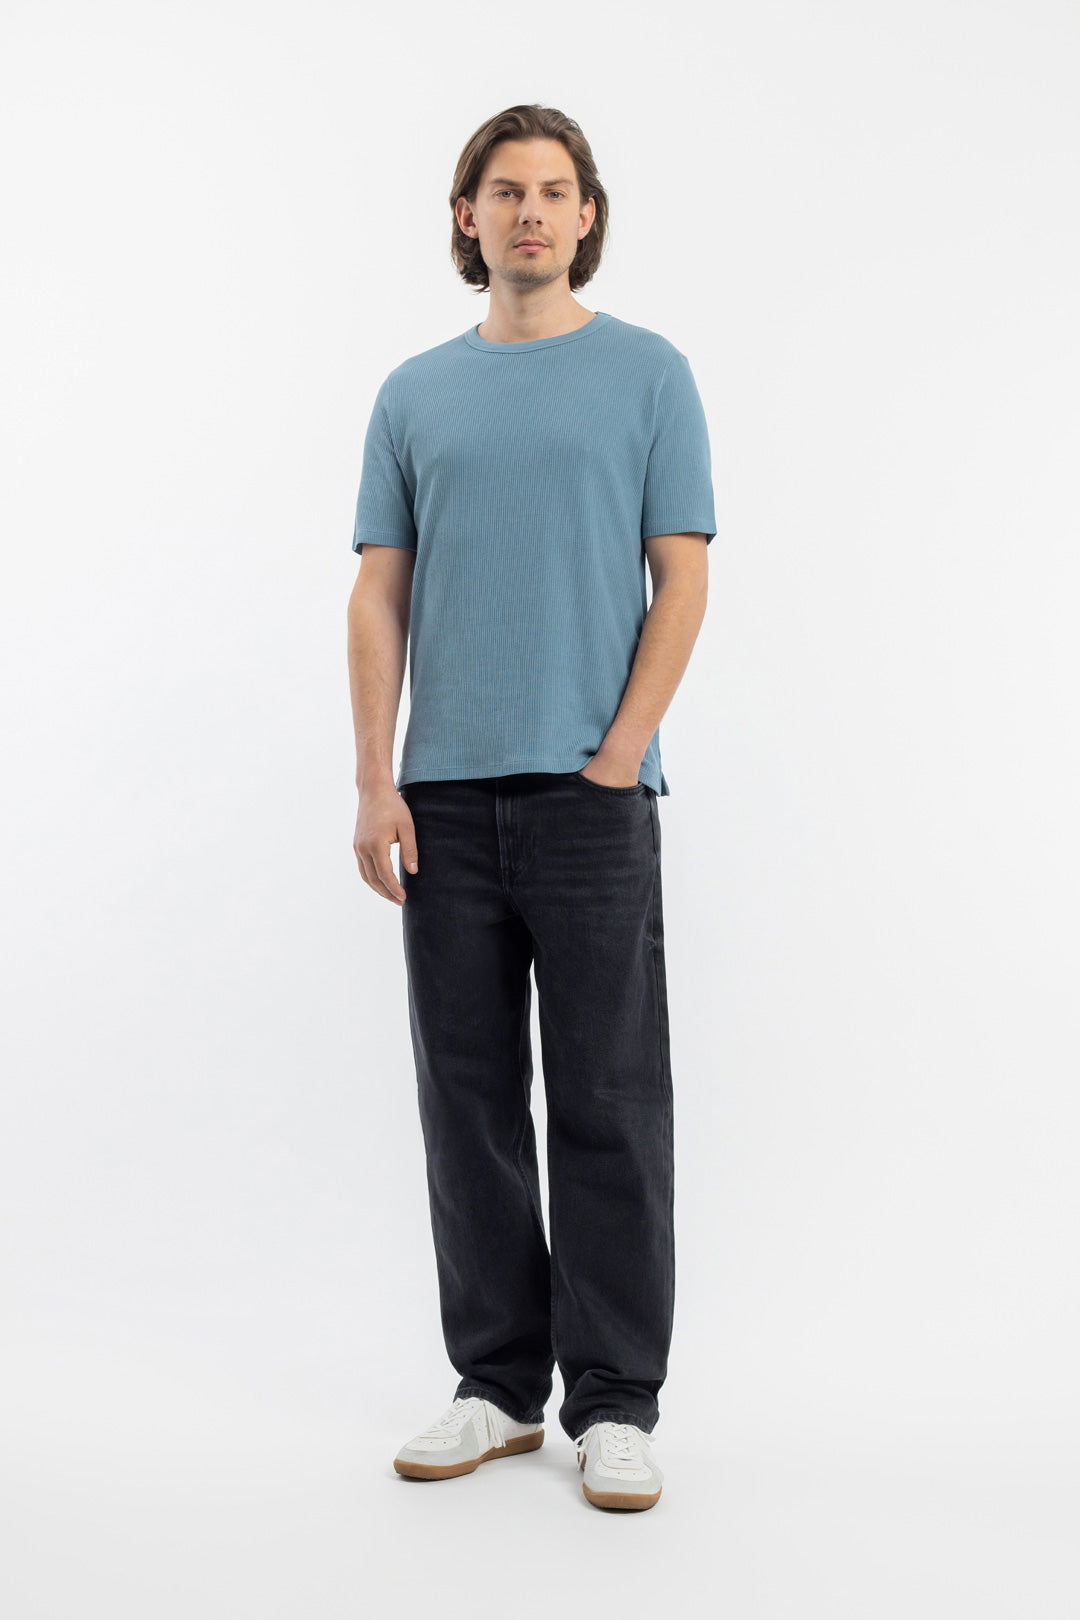 Blaues T-Shirt Waffel aus 100% Bio-Baumwolle von Rotholz